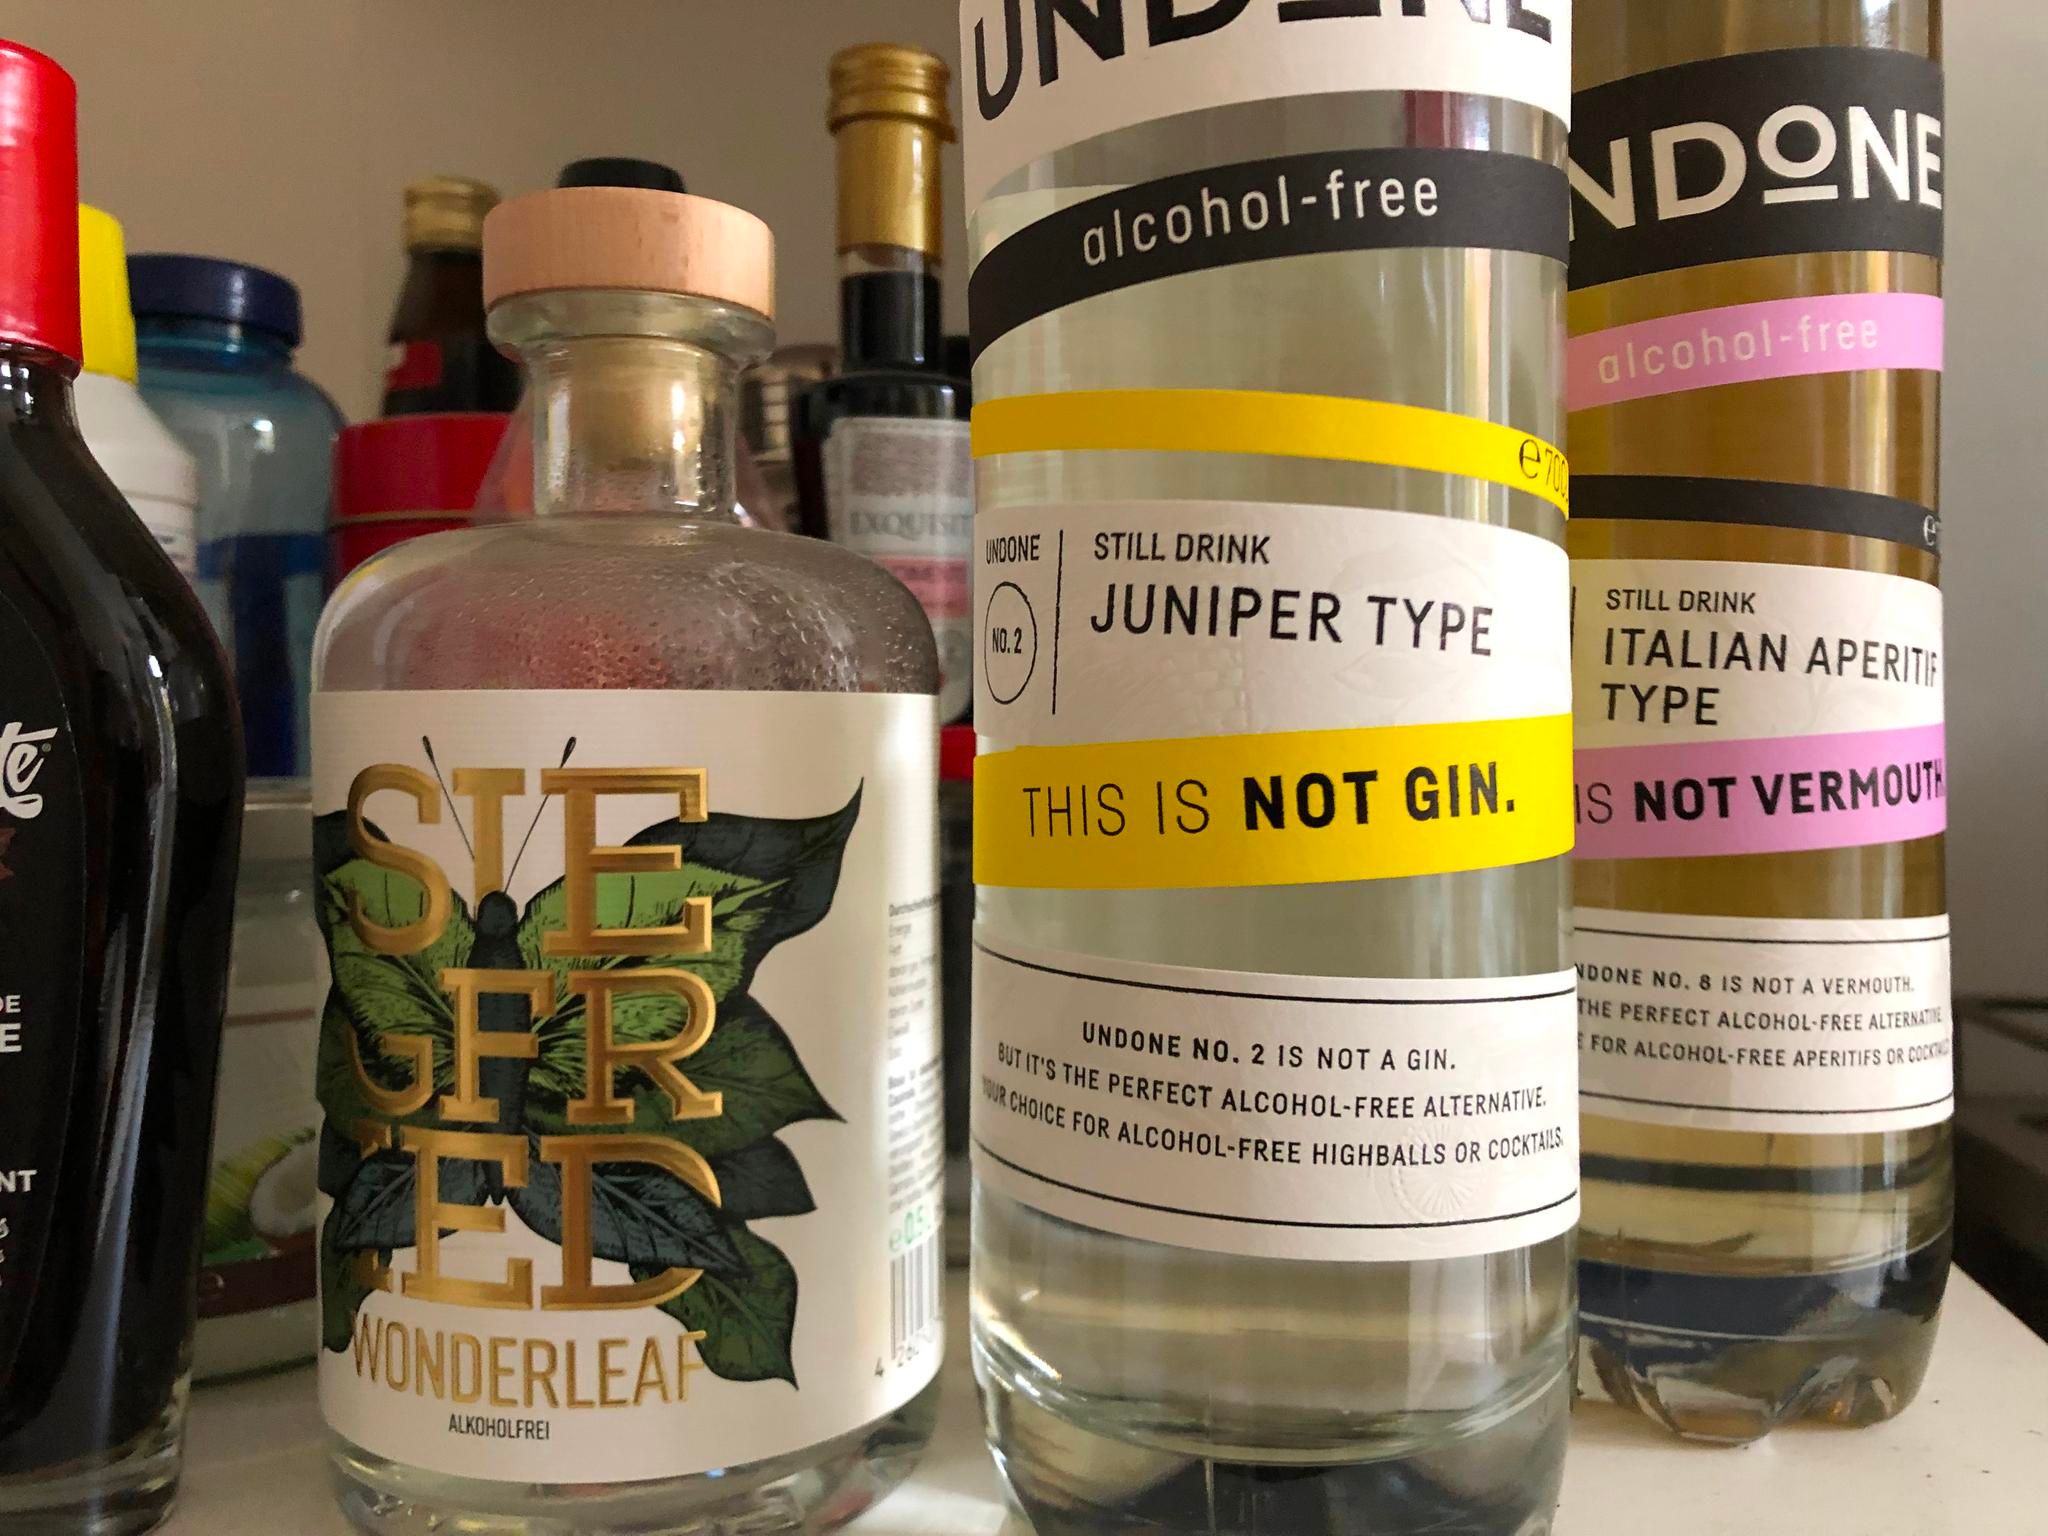 Undone, Seedlip, Wonderleaf: Alkoholfreier Gin ist der neue Trend